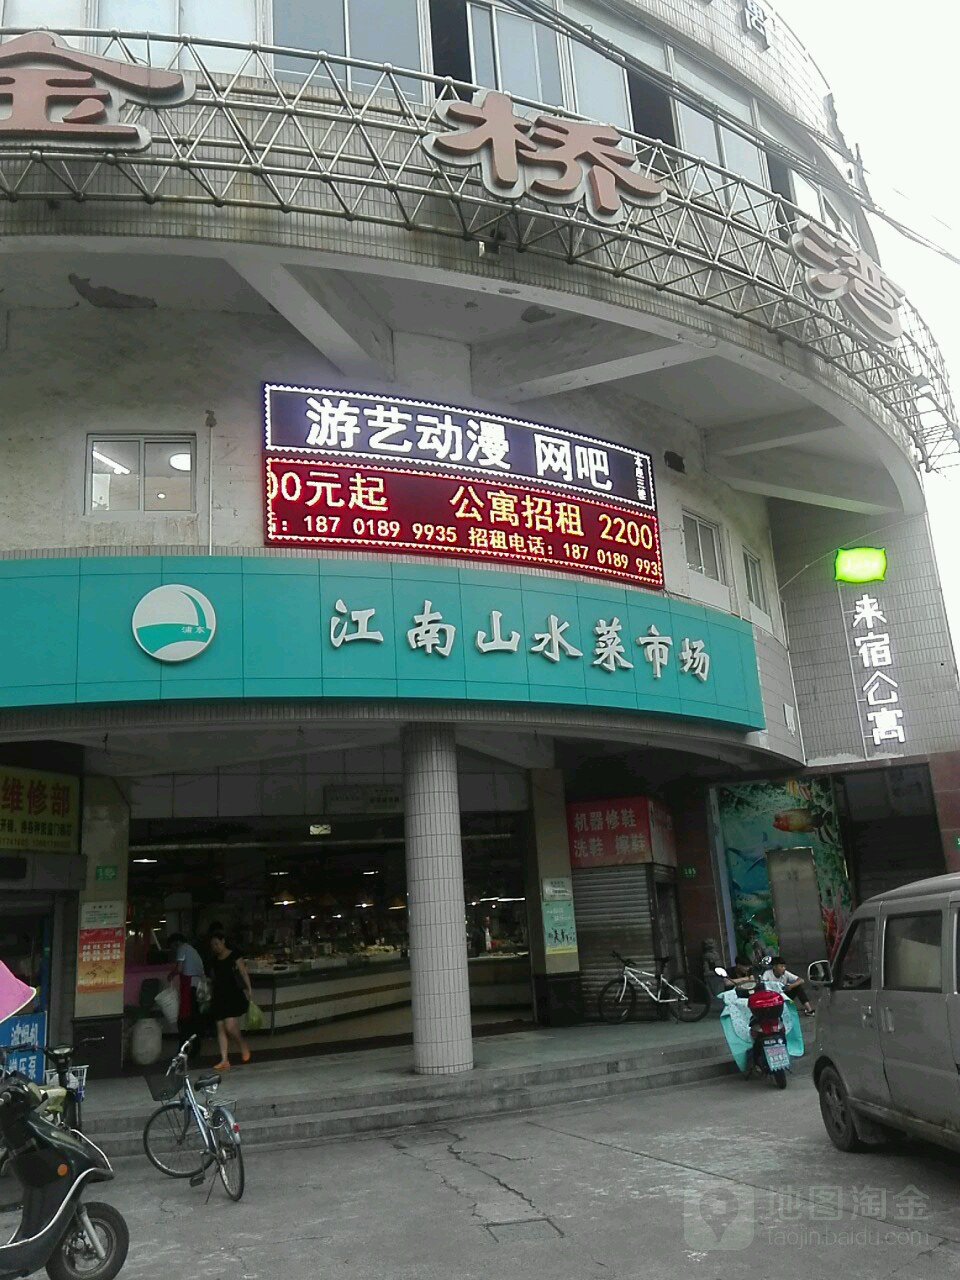 上海市浦东新区沪东新村街道寿光路185号筑梦居菜市场